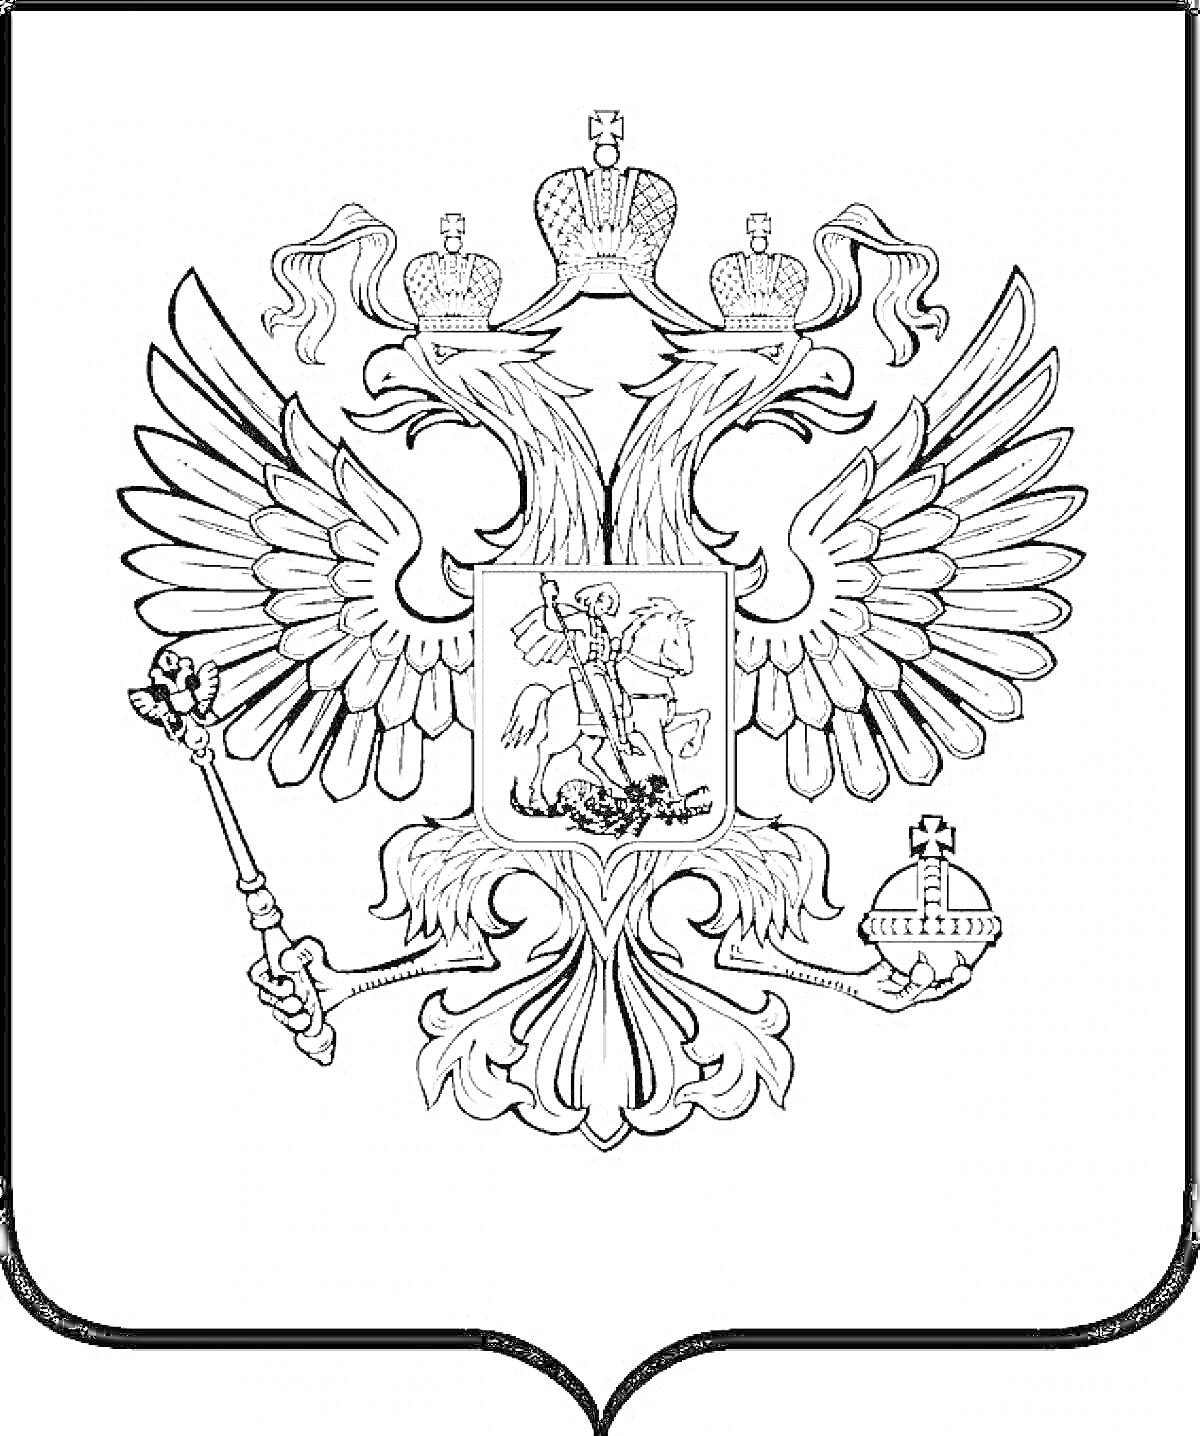 Герб России с двуглавым орлом, держащим скипетр и державу. На груди орла расположен щит с изображением всадника на коне, поражающего копьем змея.